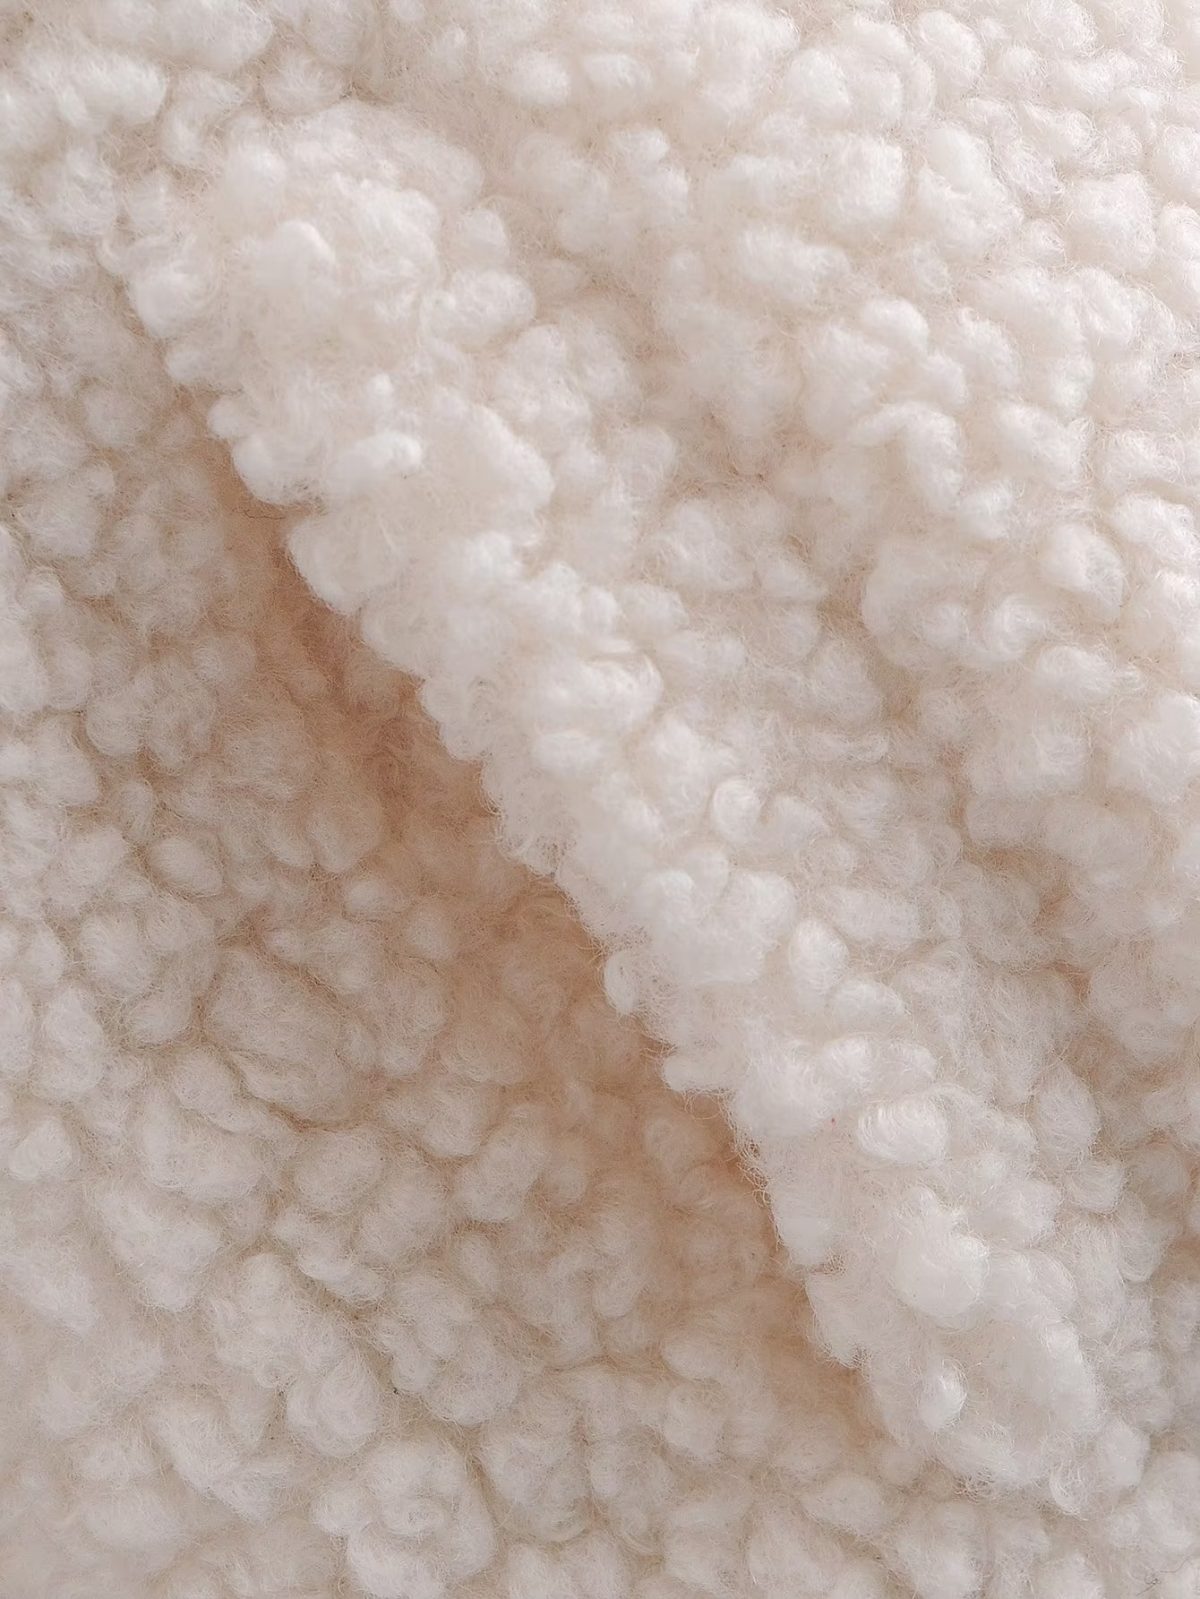 Autumn Lamb Wool Hooded Cotton Coat - Coats & Jackets - Uniqistic.com